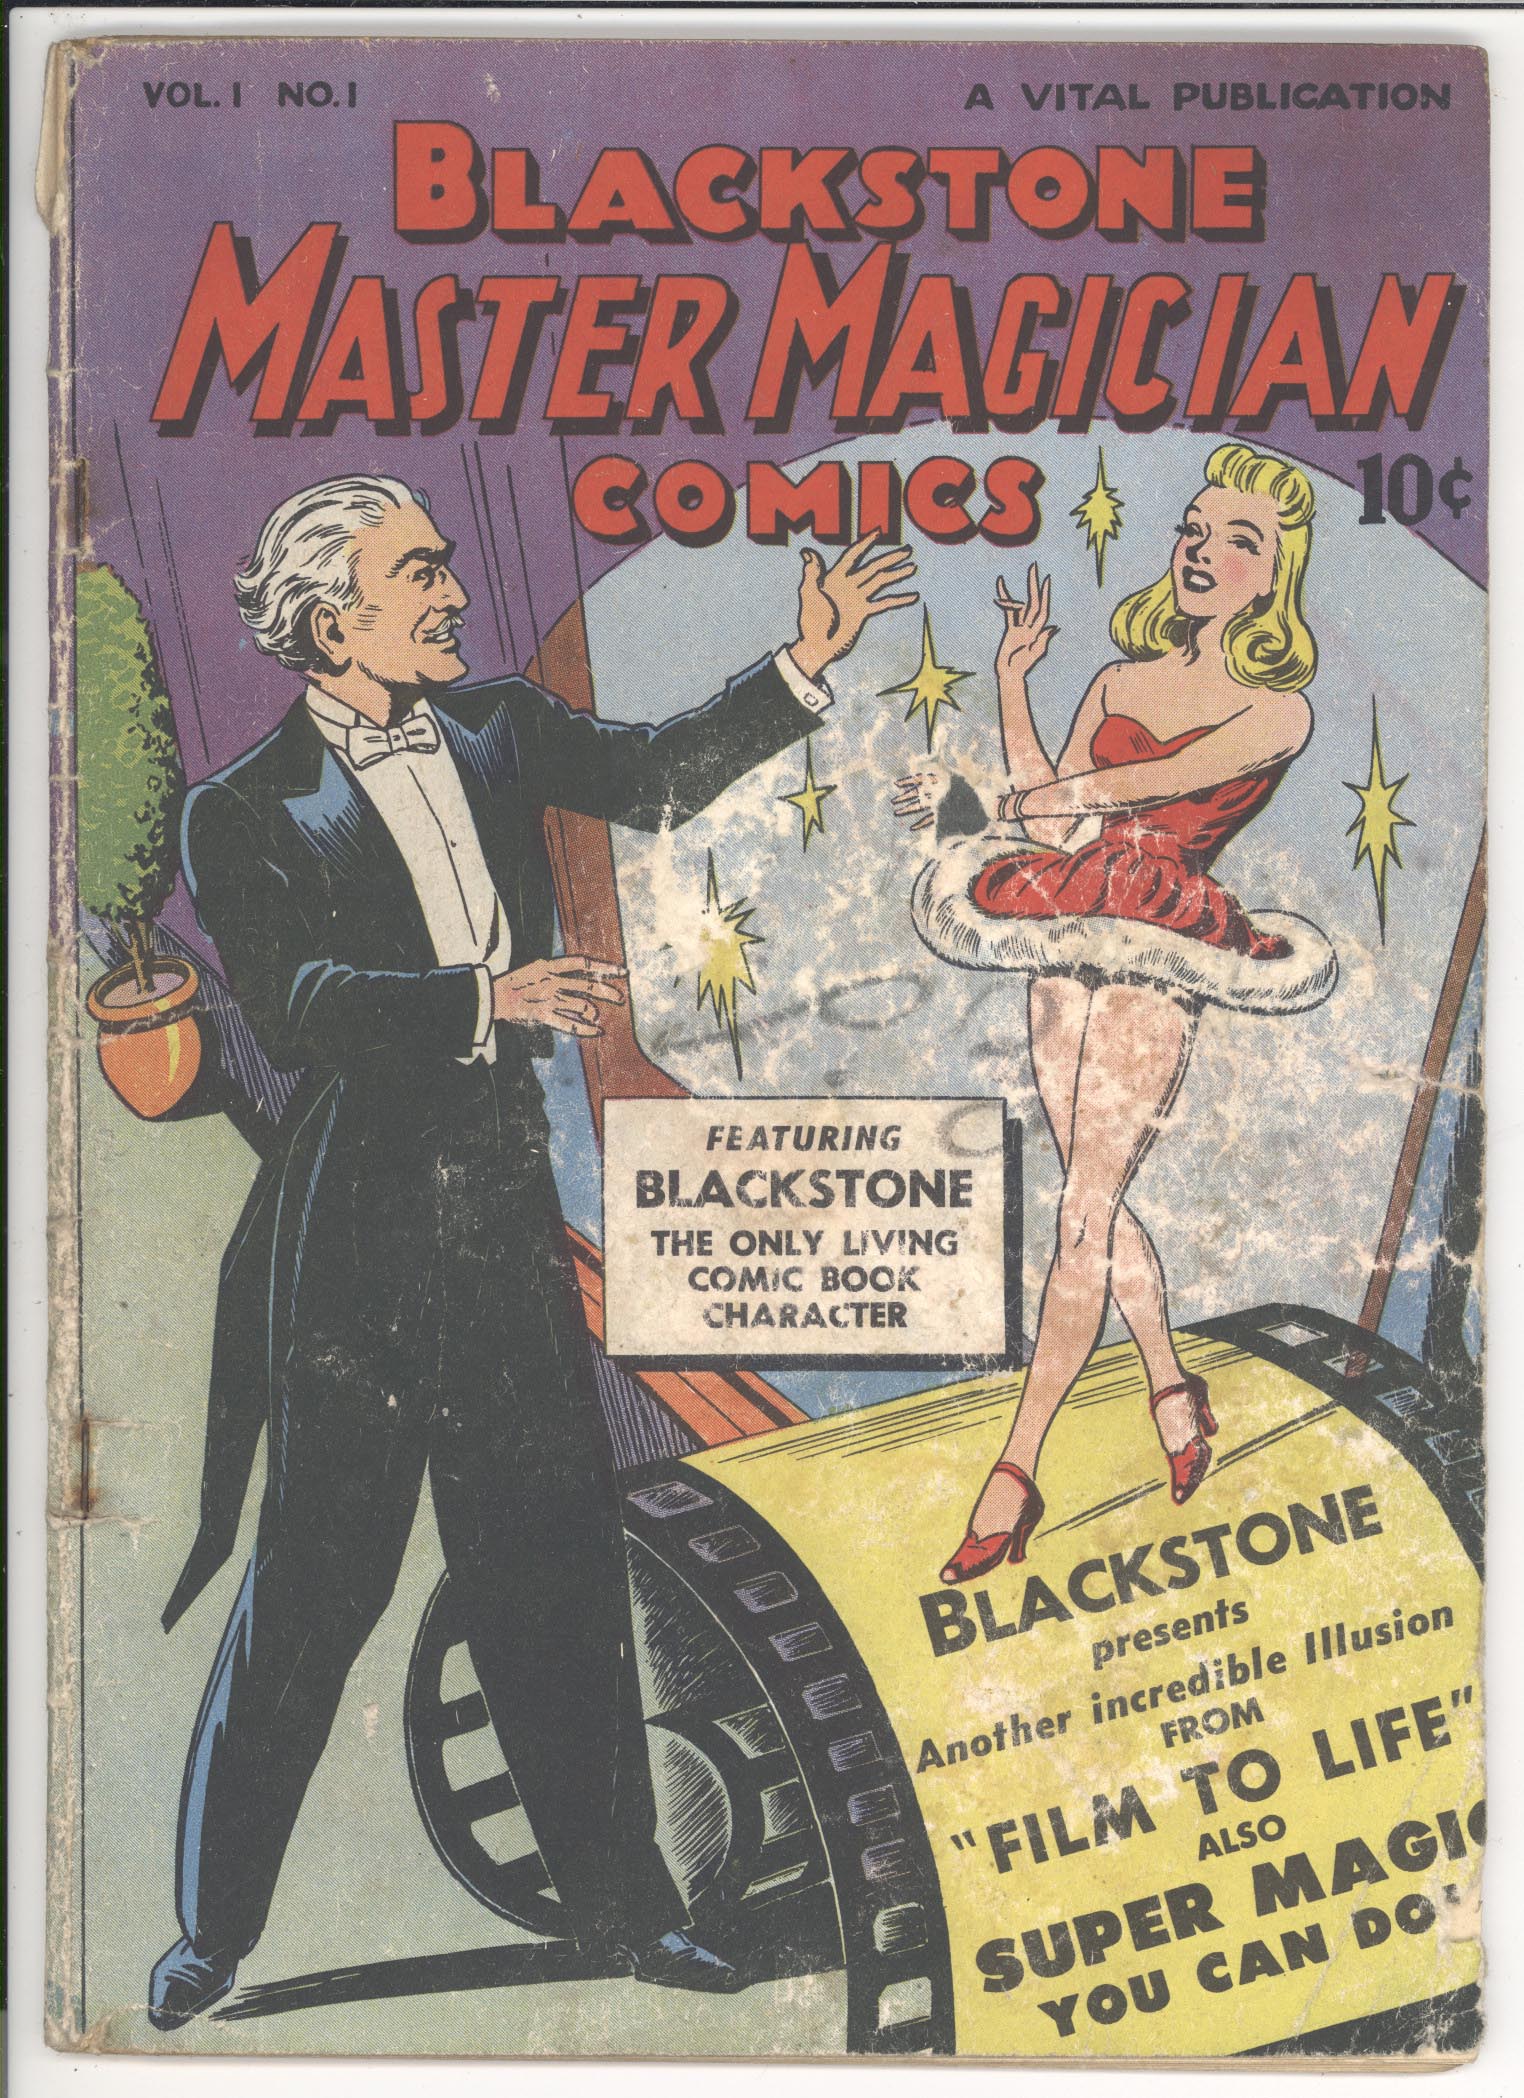 Blackstone Master Magician Comics #1 front